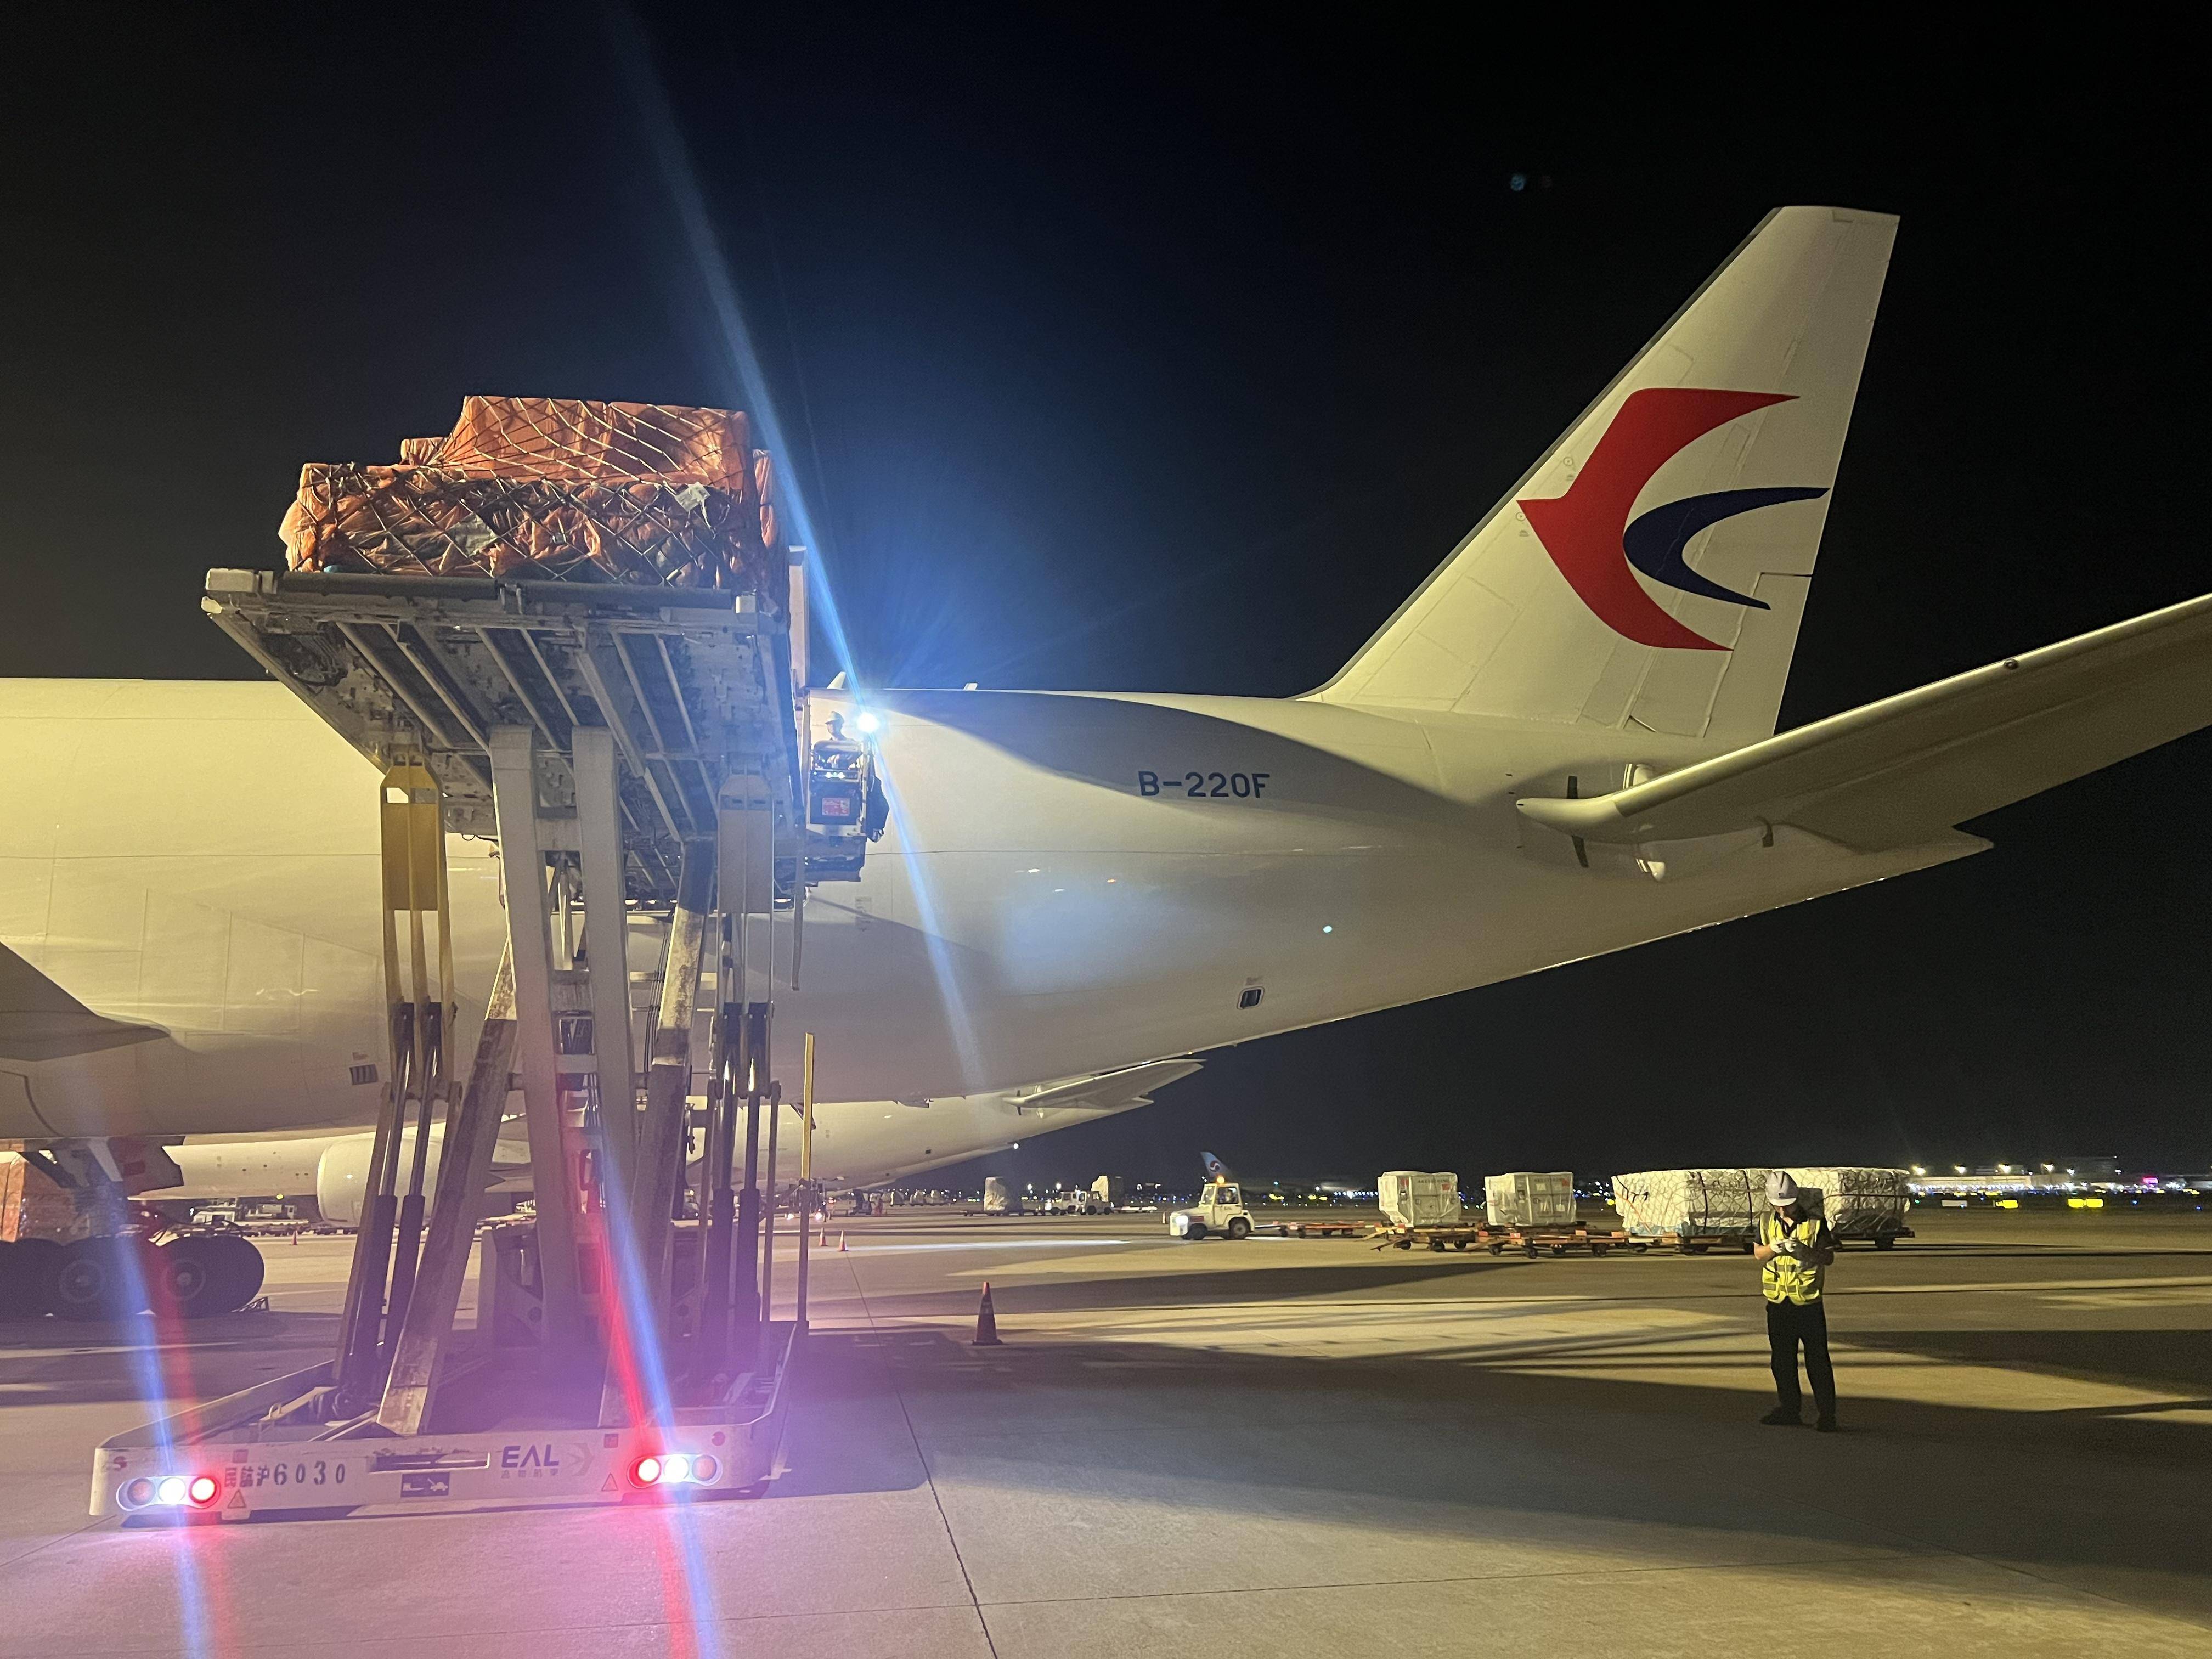 据悉,该全货机航线由东航物流新引进的波音777f全货机执飞,出港航班所